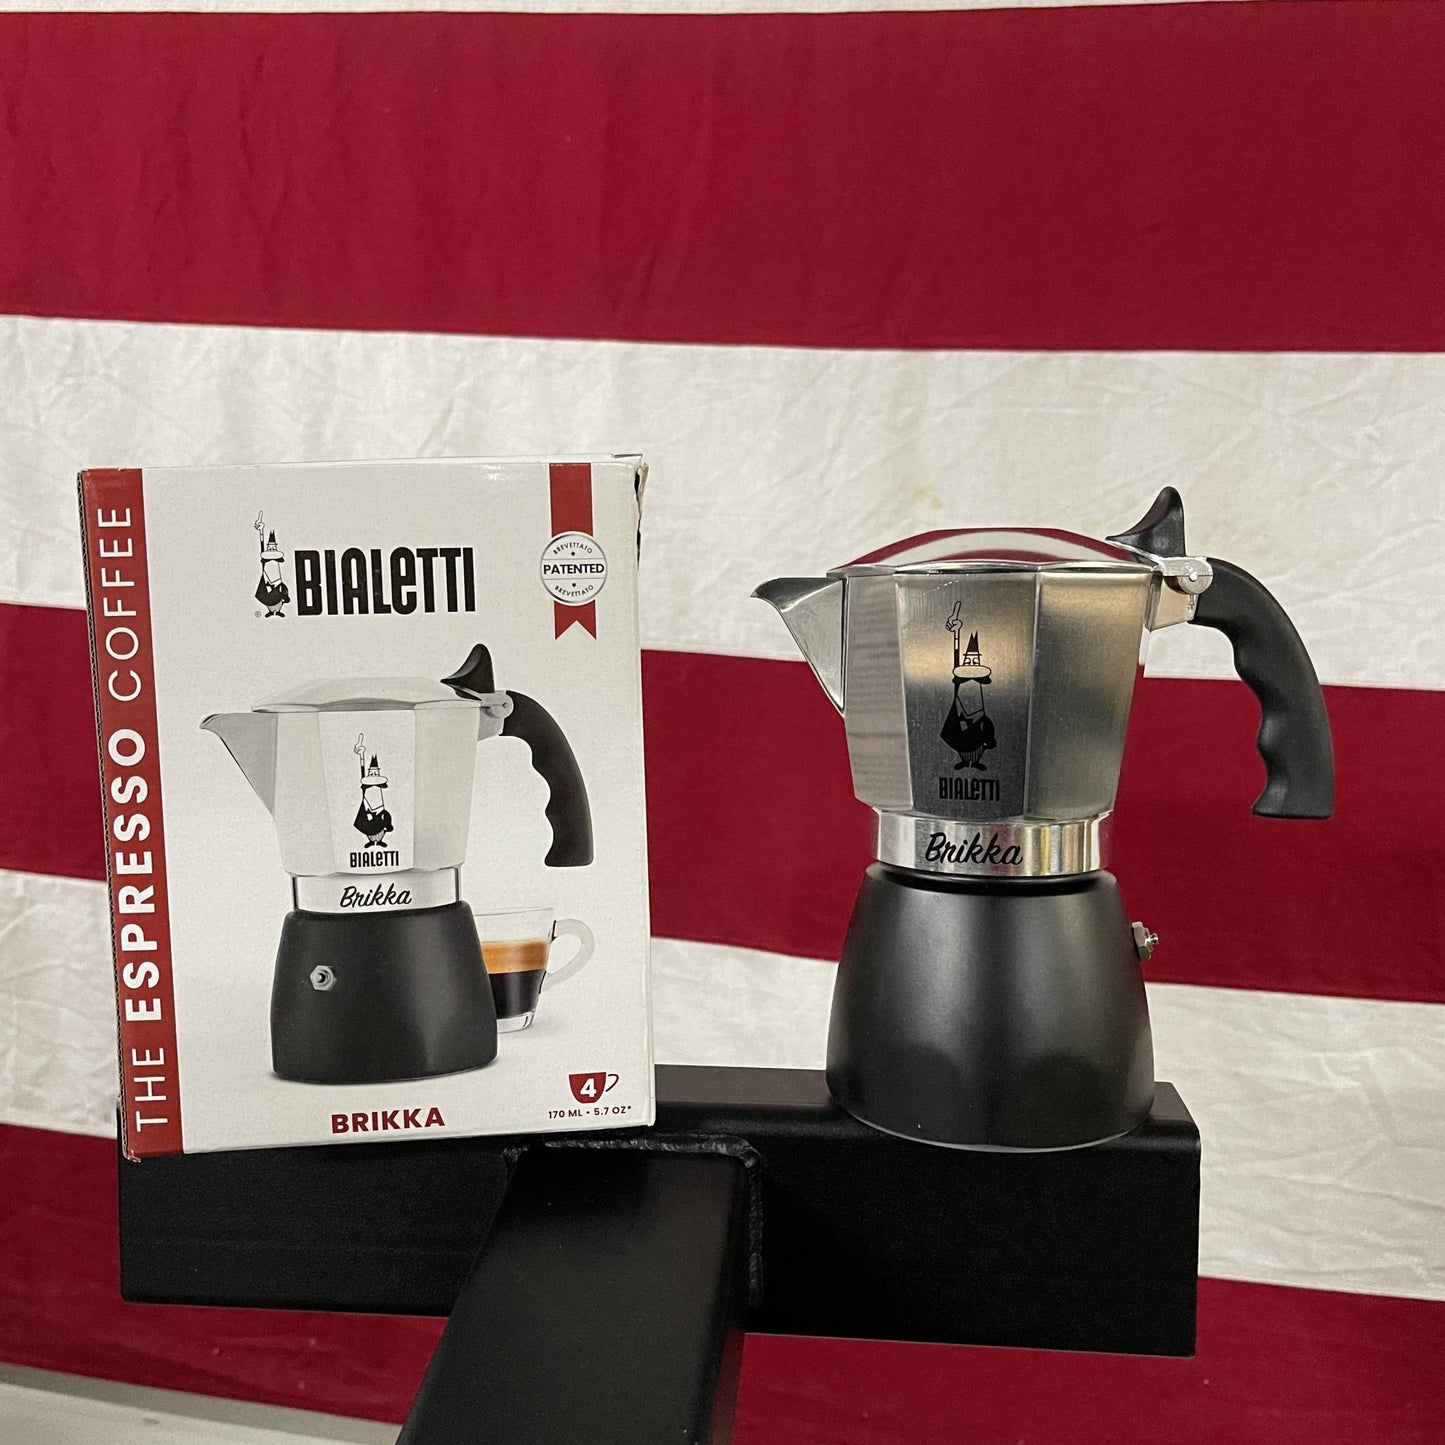 Bialetti Brikka - The MOKA Aroma, The Espresso Crema!